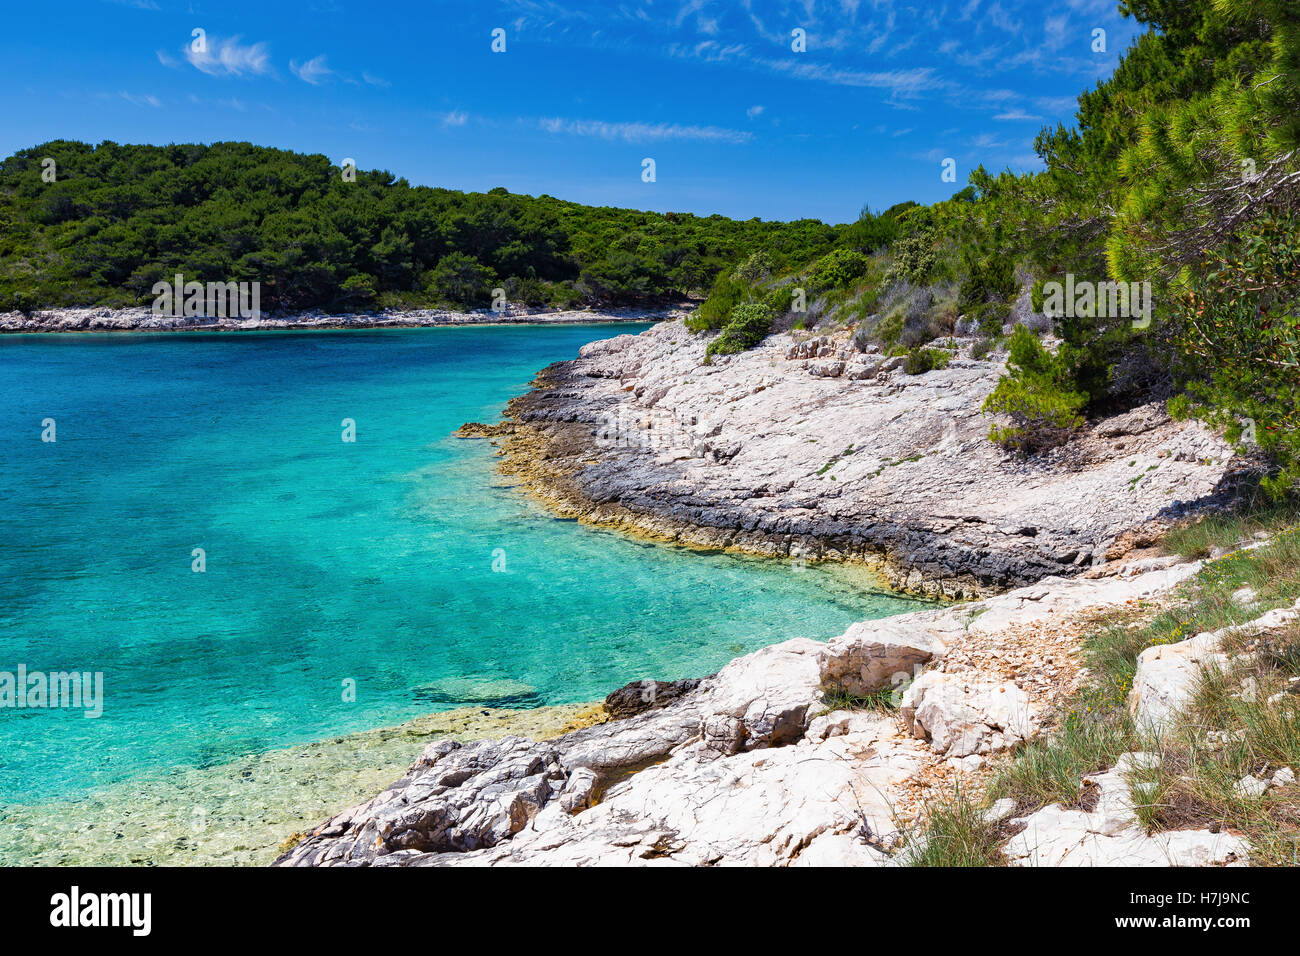 Felsige Küste einer Bucht auf den Pakleni-Inseln. Paklinski otoci. Transparentes adriatisches Meerwasser. Kroatien. Europa. Stockfoto